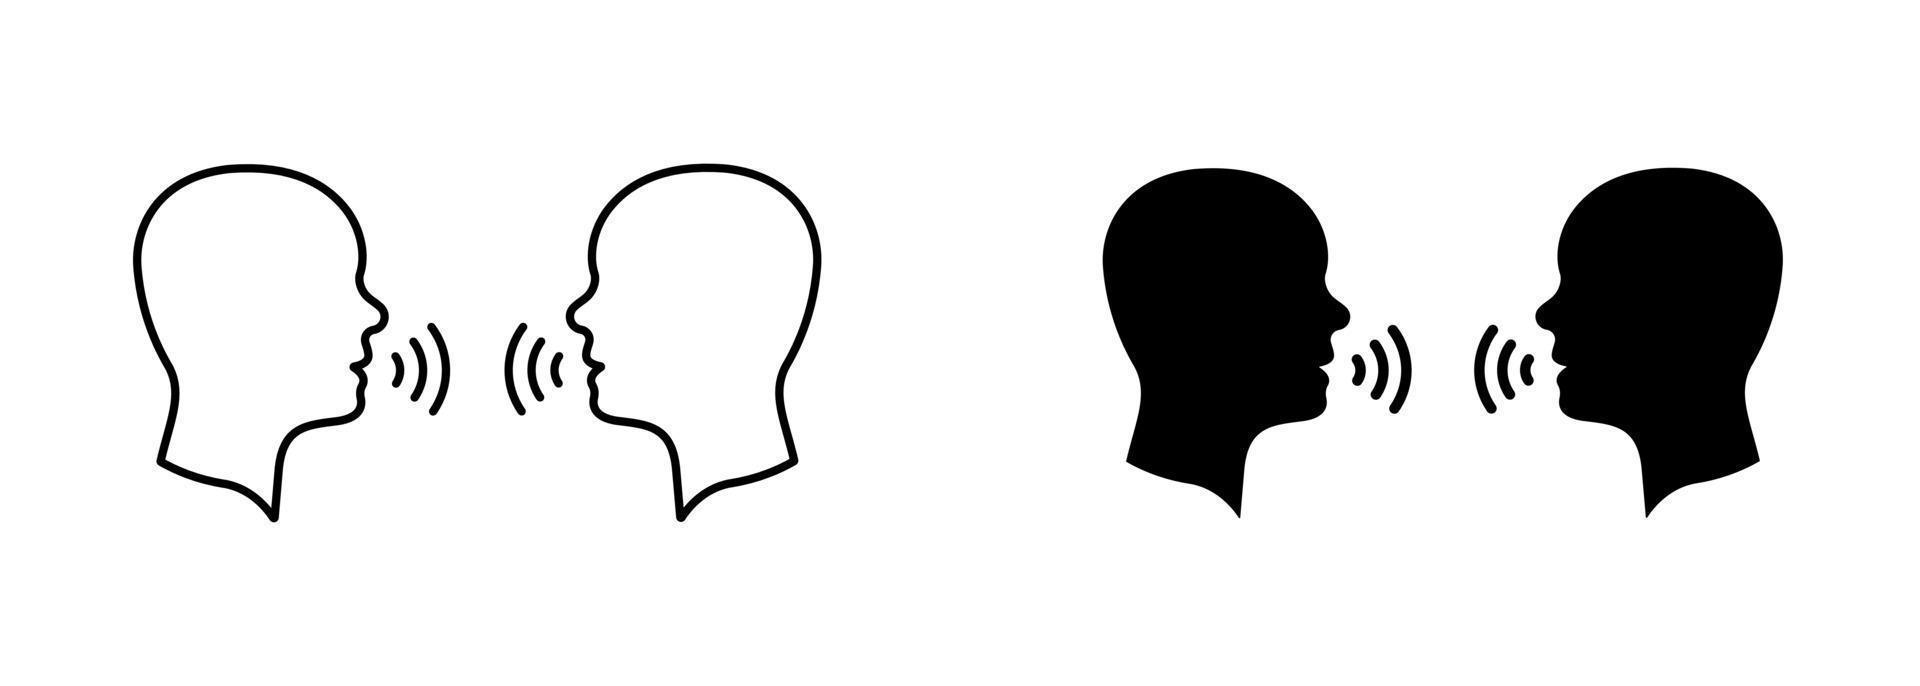 Zwei-Mann-Gesprächssilhouette und Liniensymbol. Menschen Gesicht Kopf im Profil sprechen Piktogramm. Sprachsymbol für Personengespräche. Kommunikationsdiskussion. editierbarer Strich. isolierte Vektorillustration. vektor